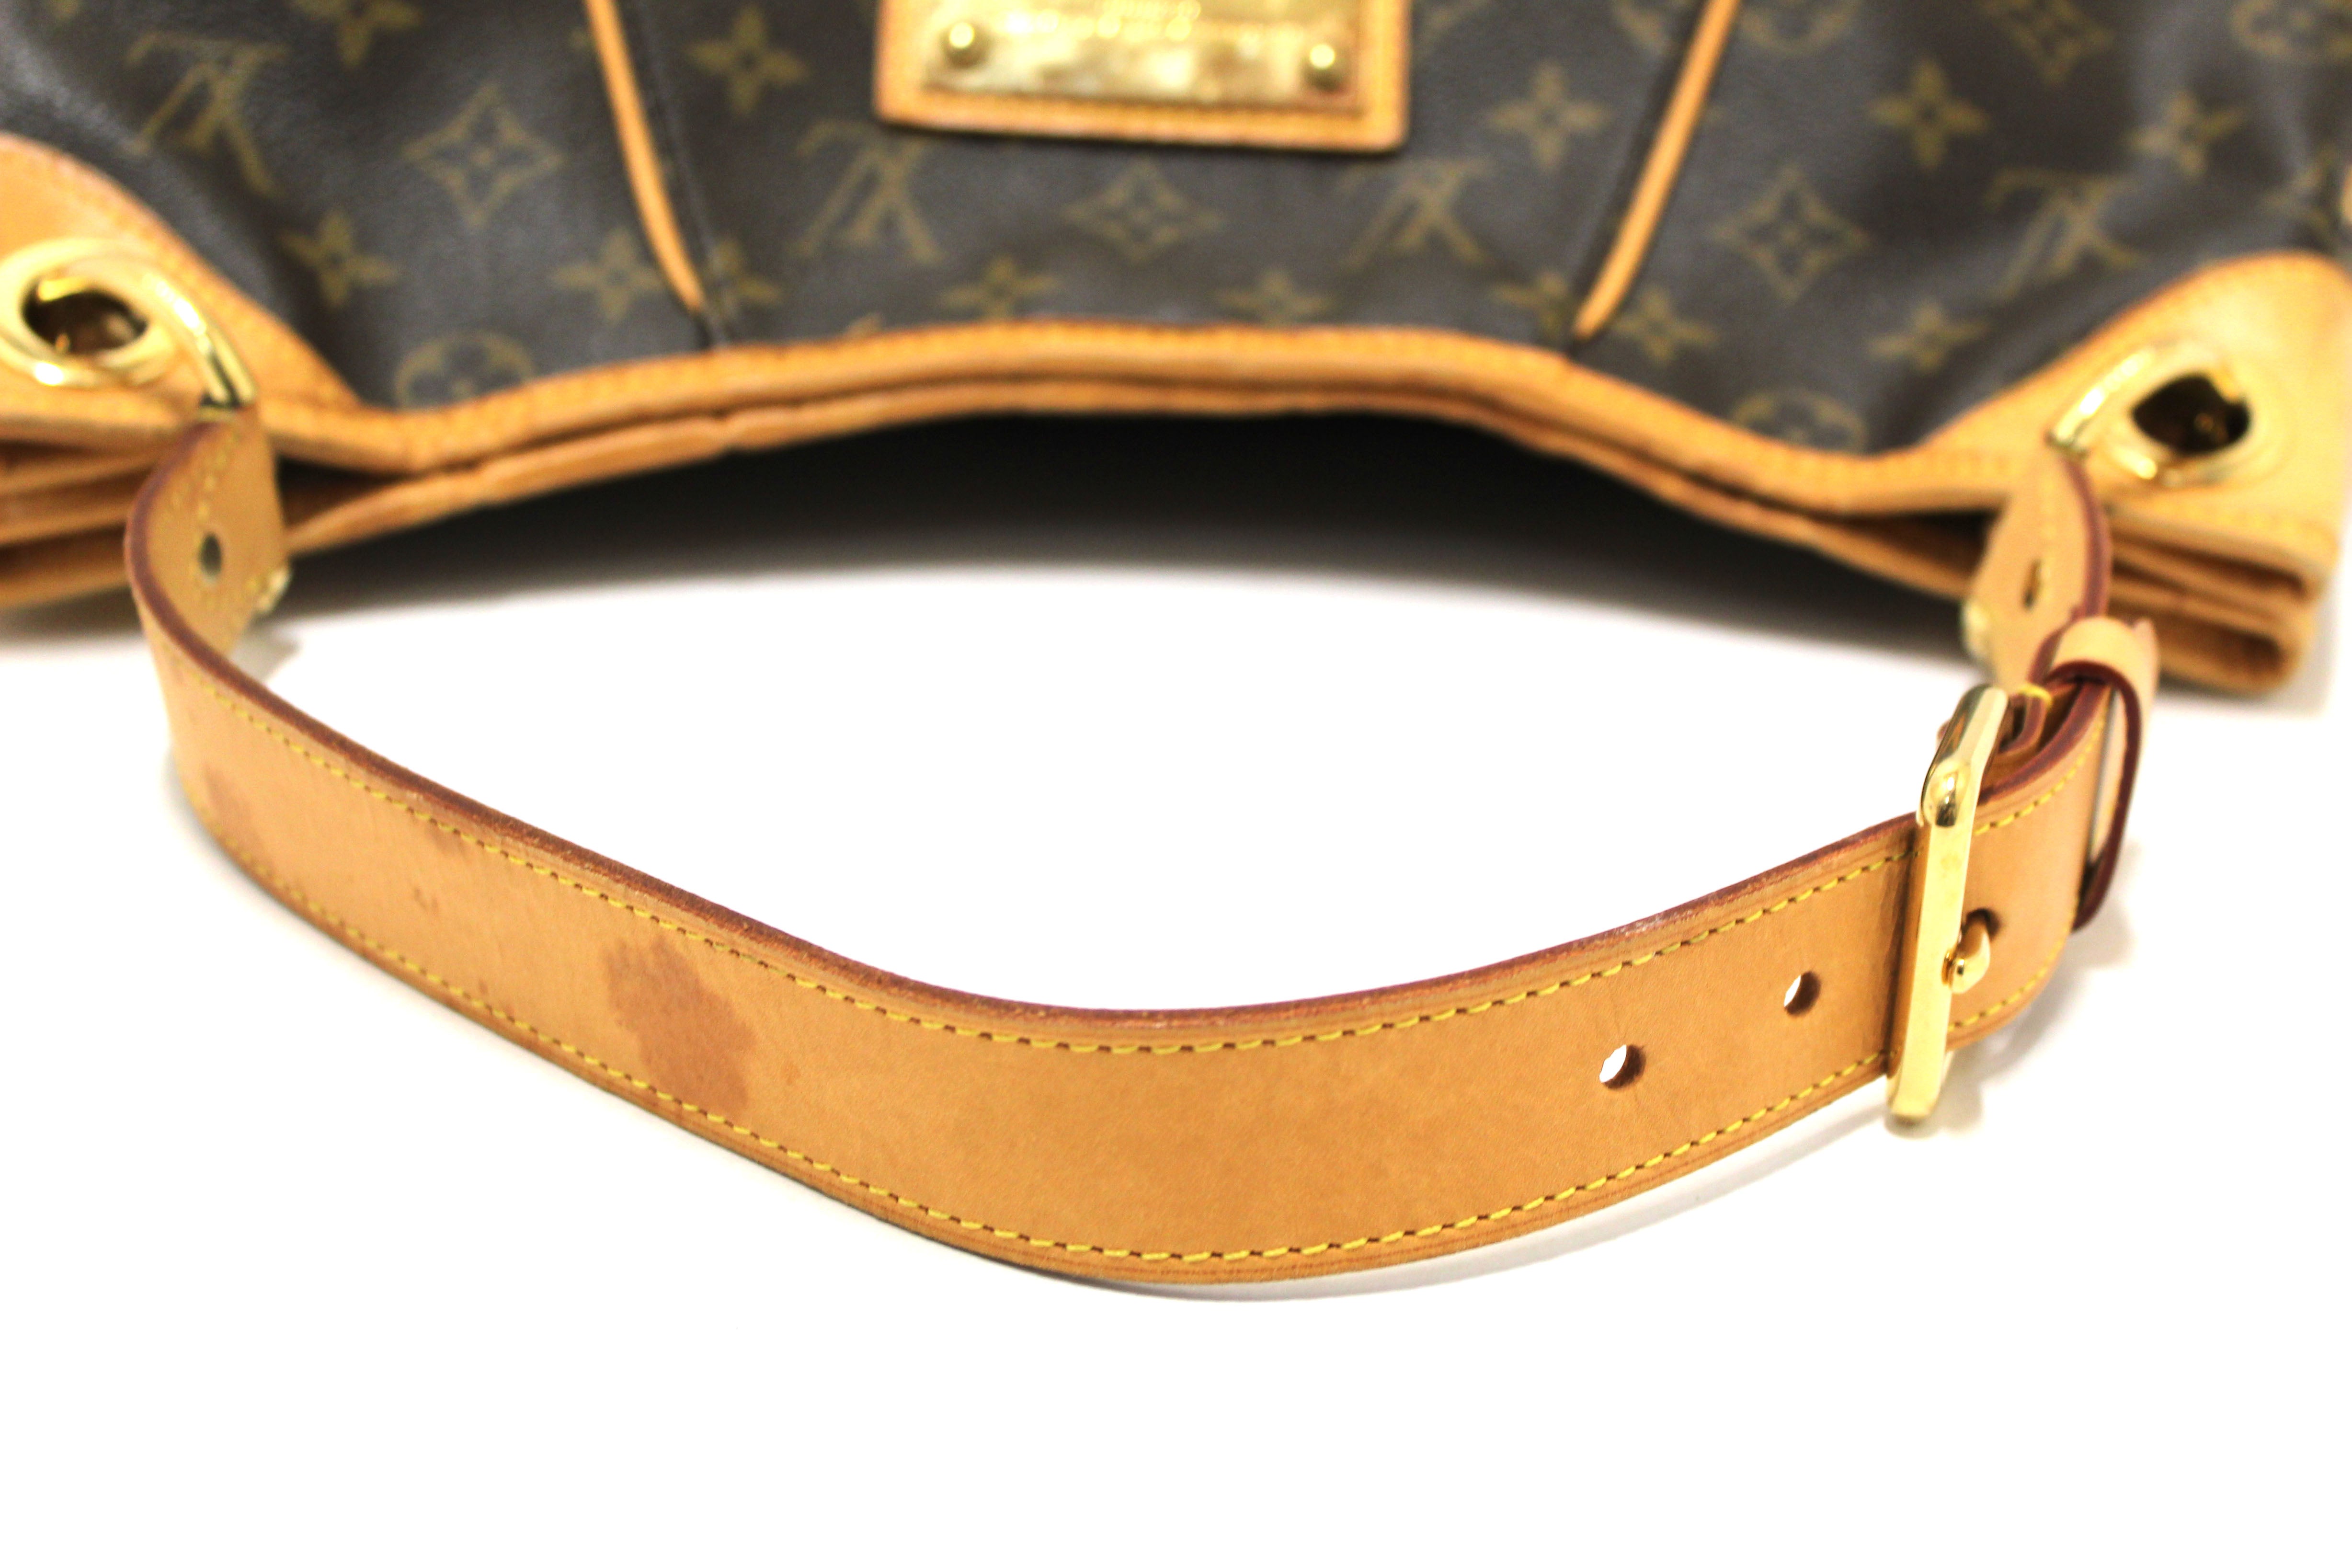 Louis Vuitton Classic Monogram Galliera PM Shoulder Bag